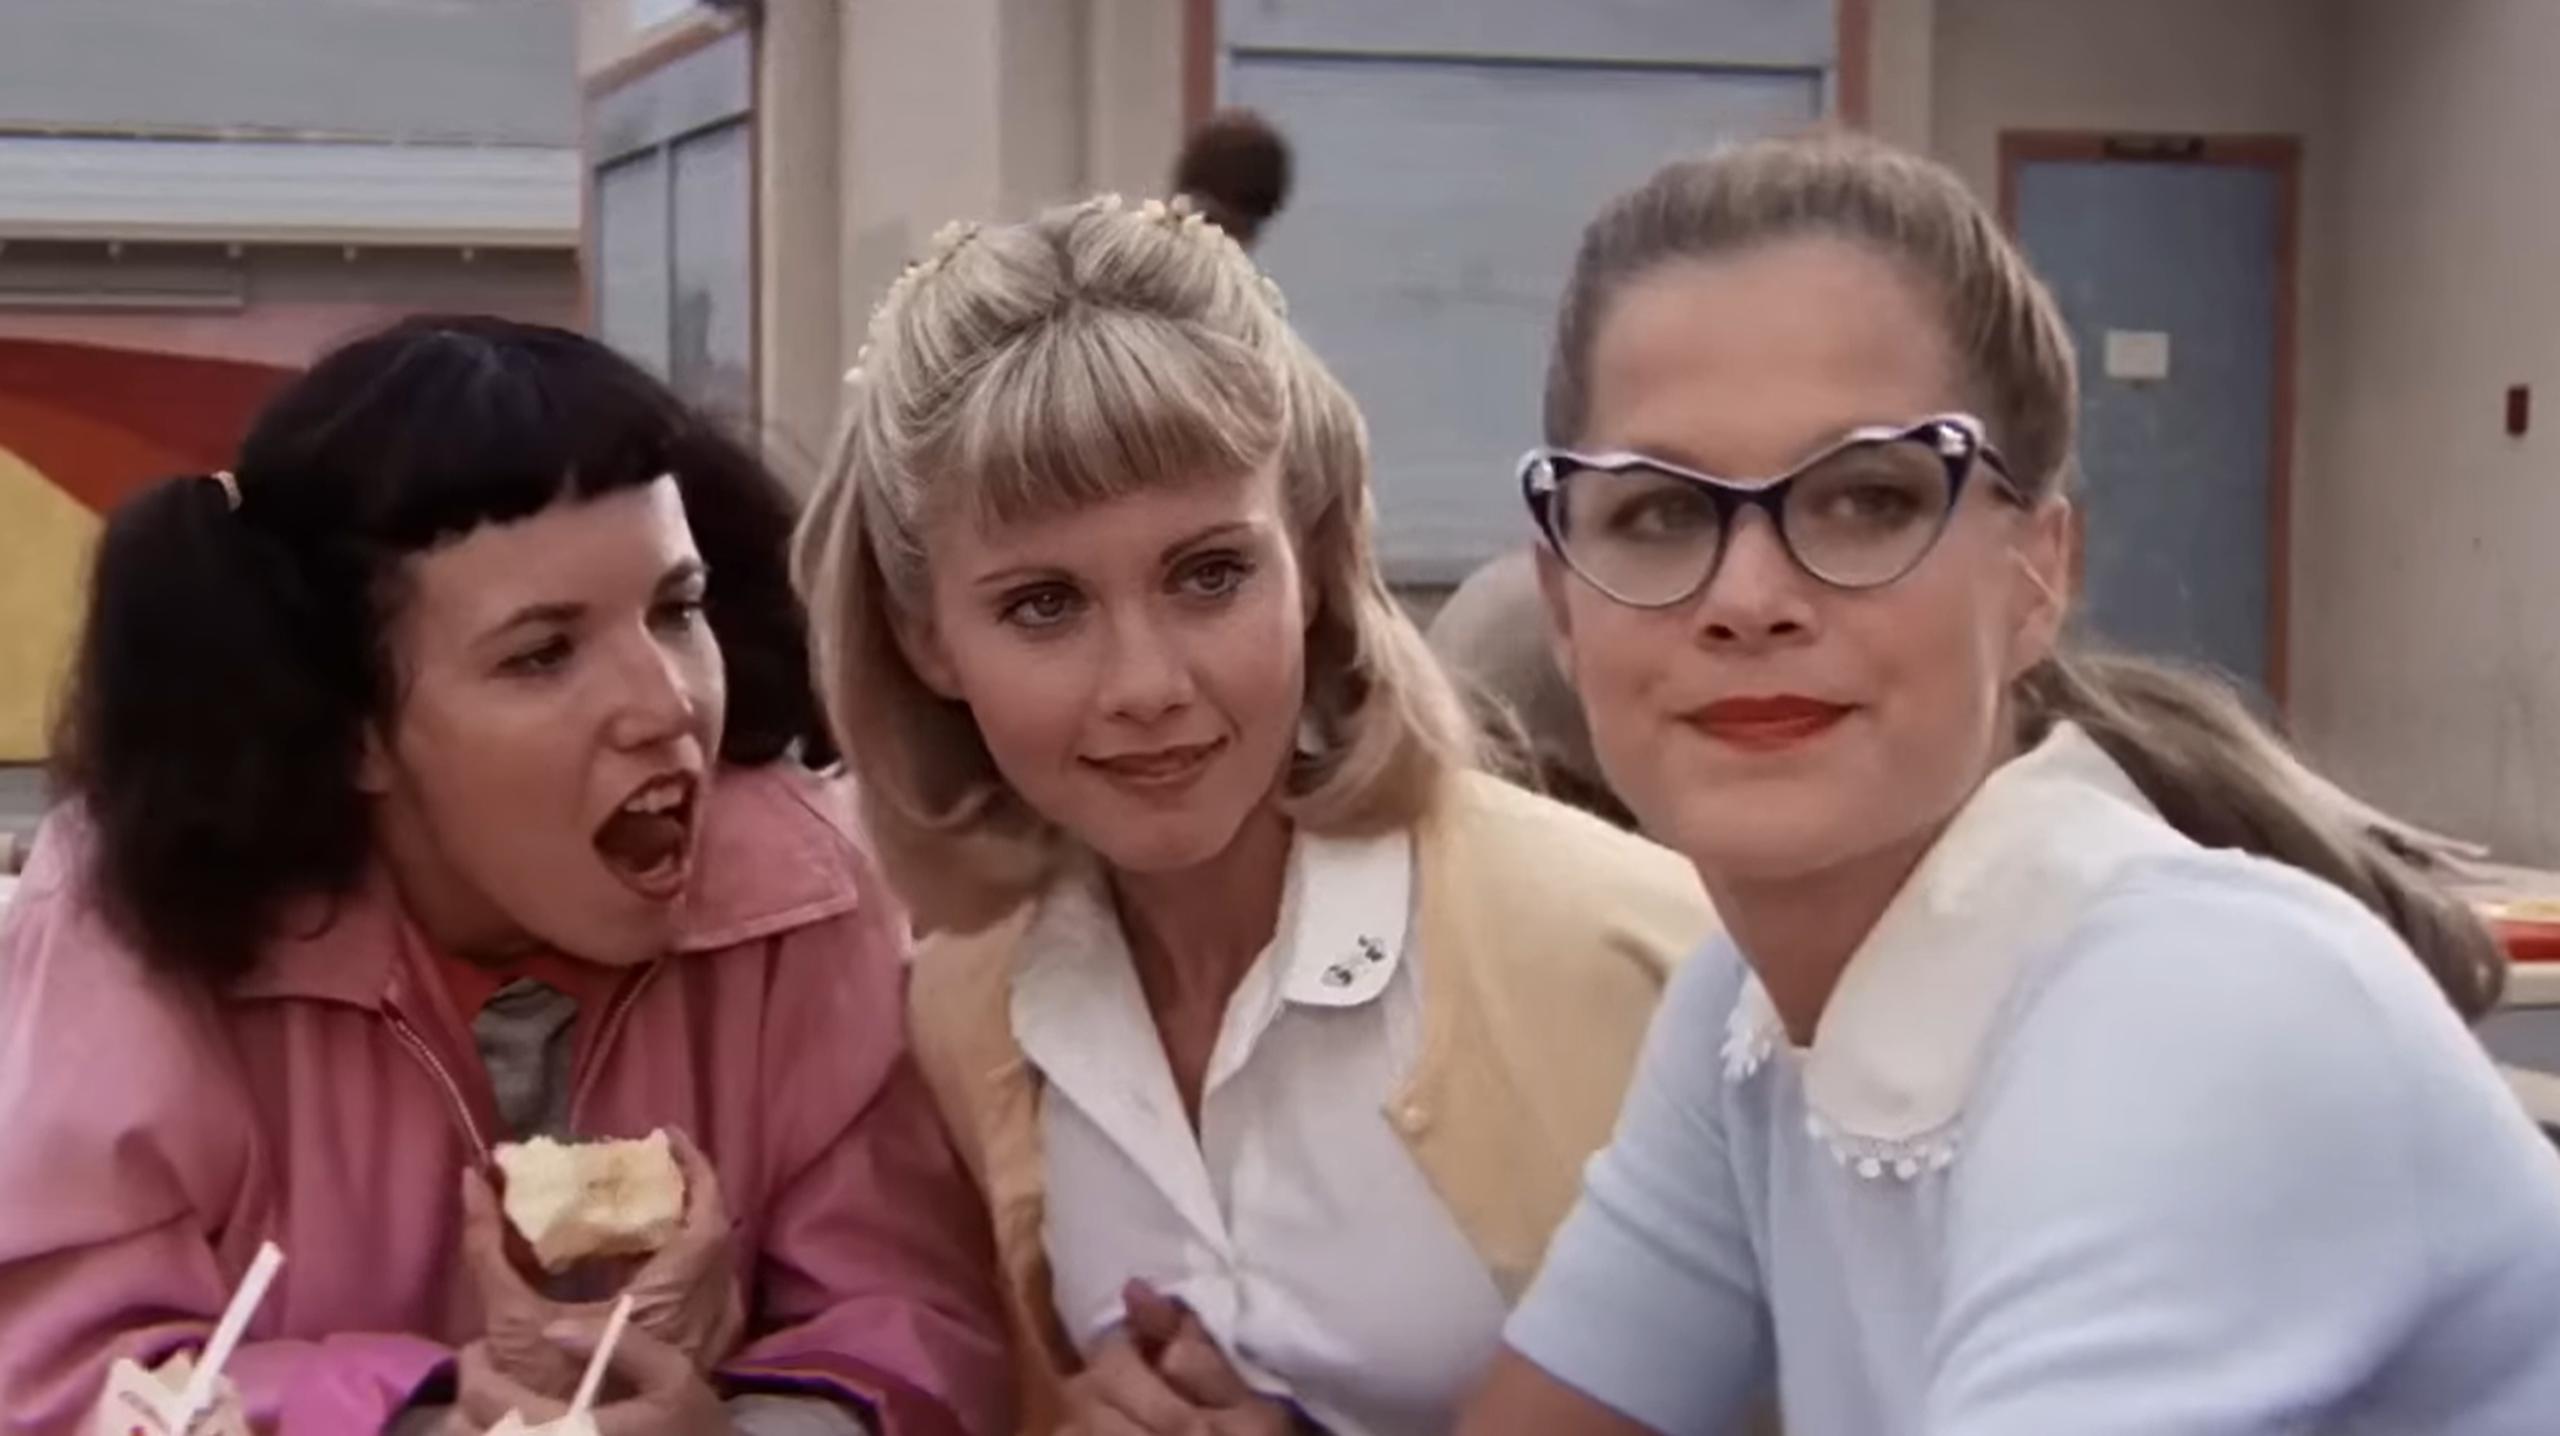 La actriz Susan Buckner interpretó a Patty Simcox, en la foto a la derecha, en el exitoso musical de 1978 "Grease".